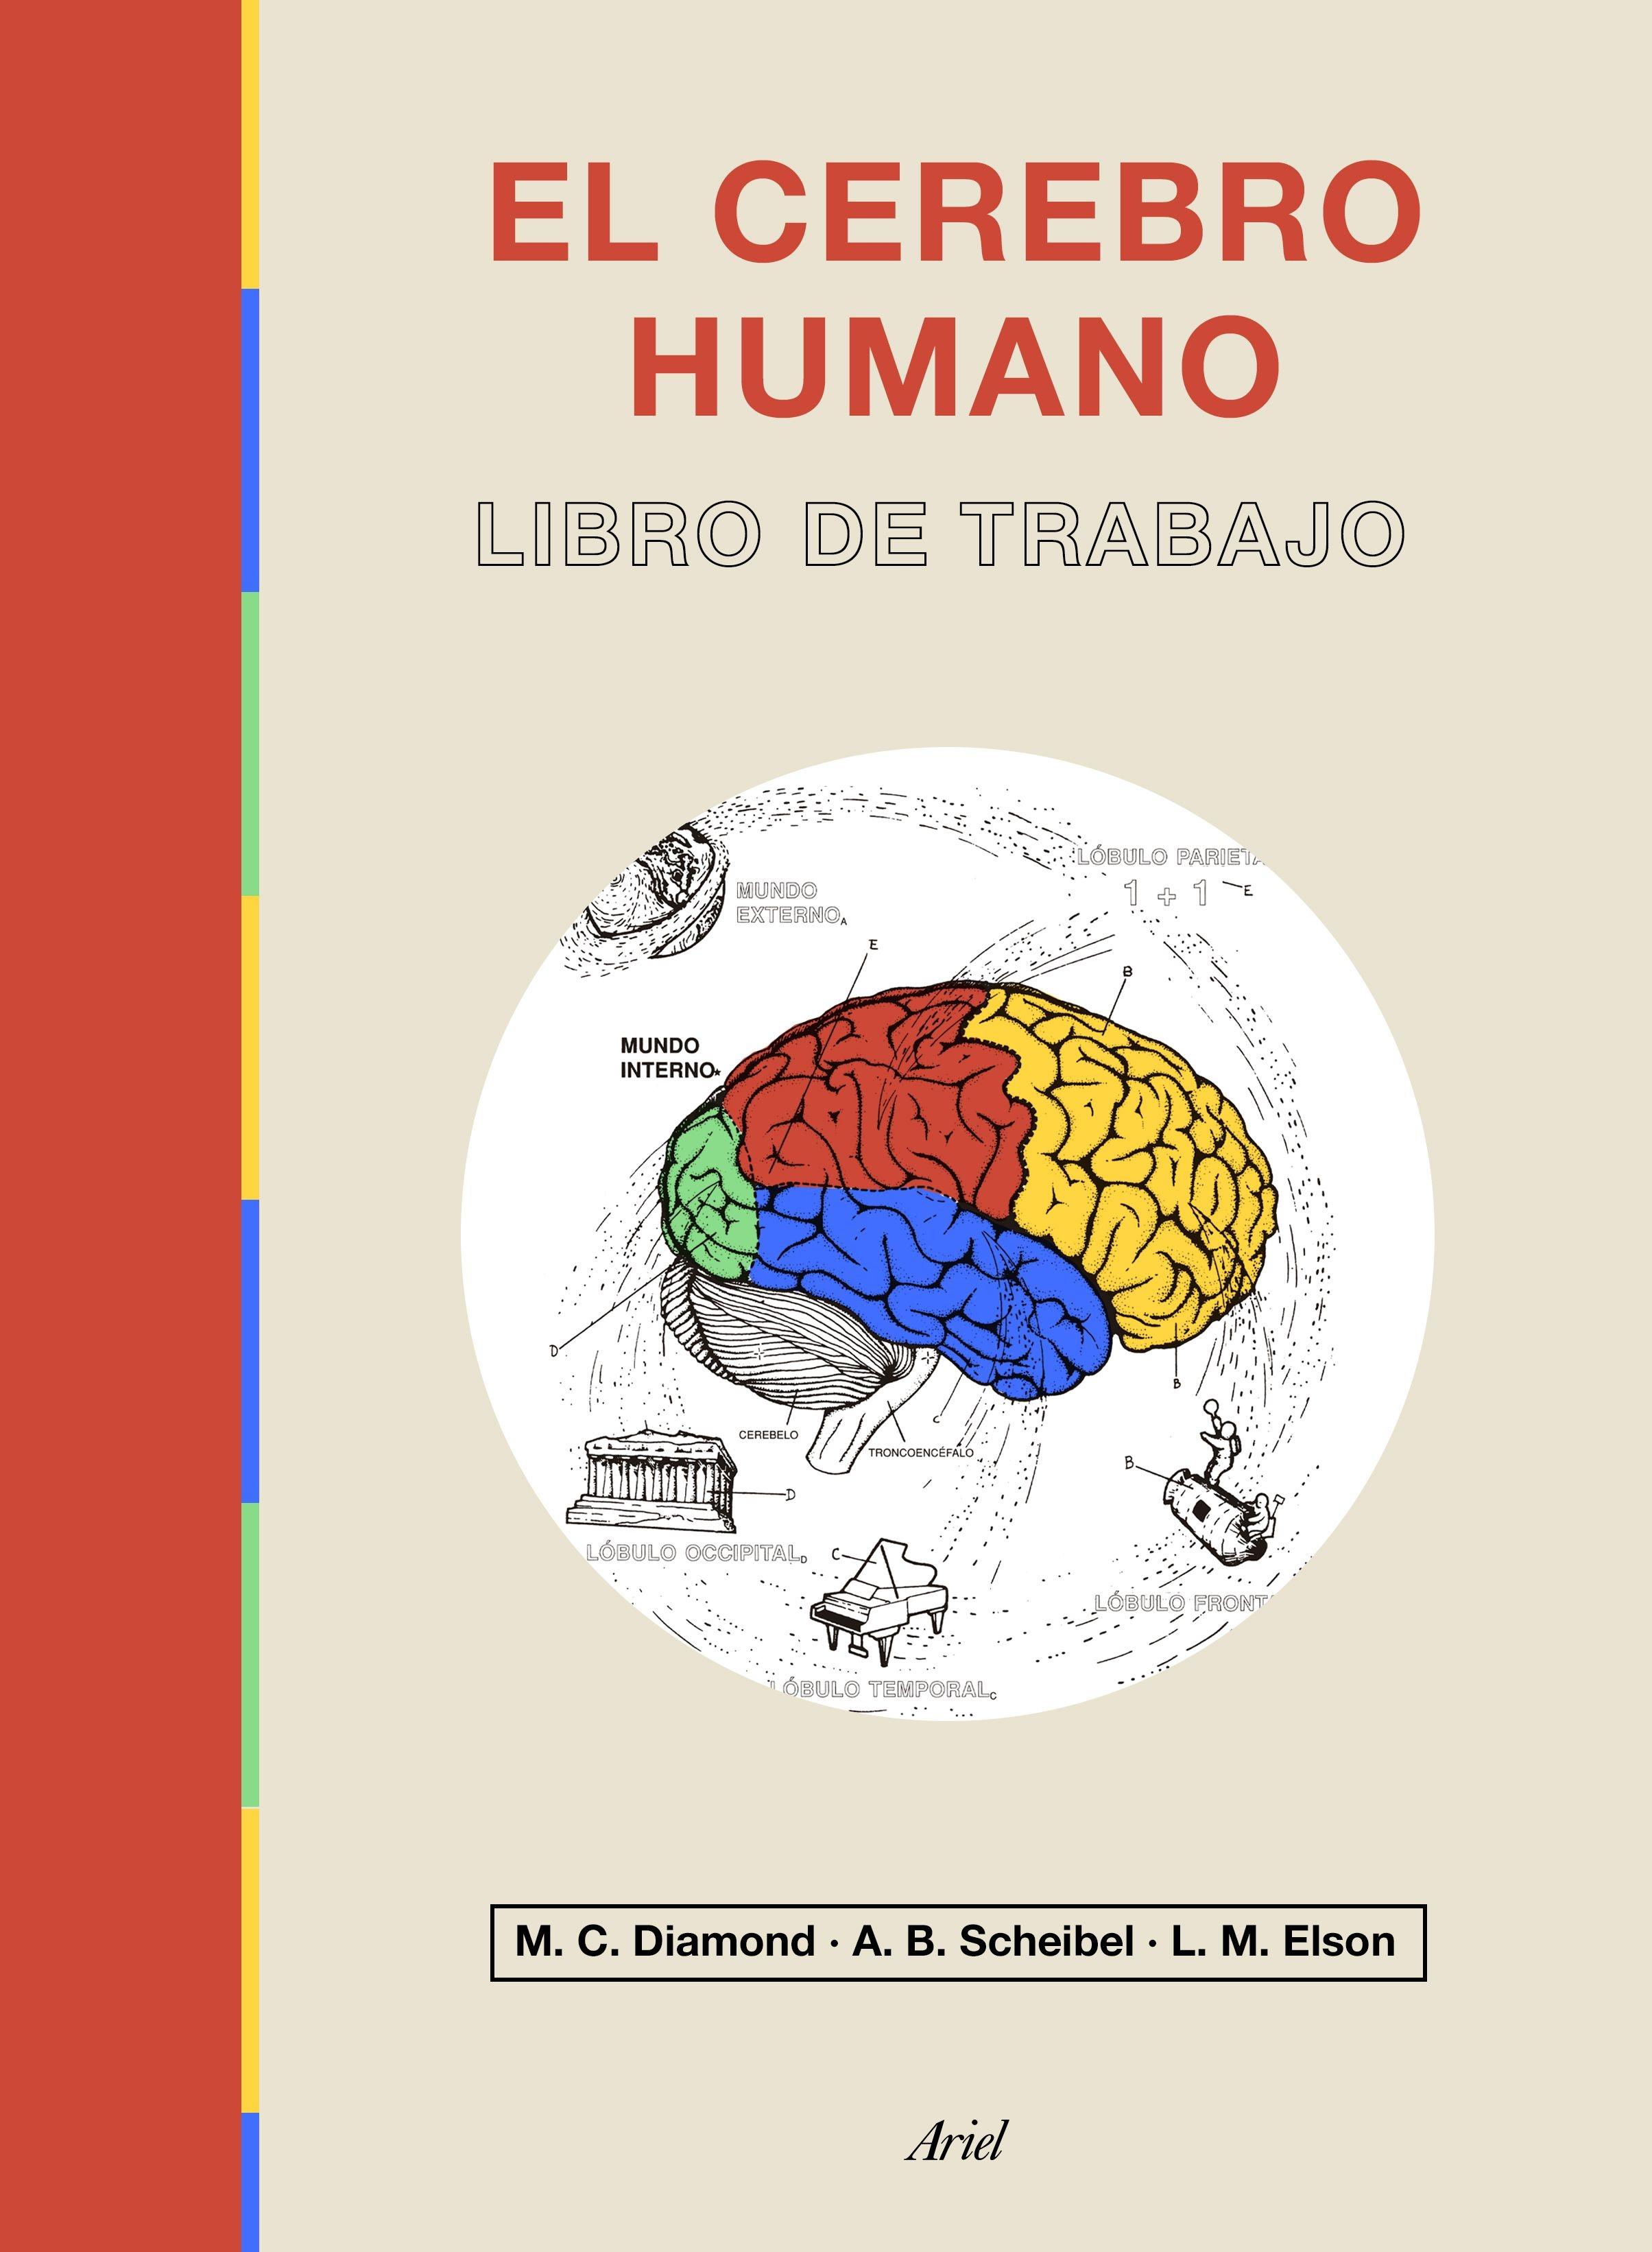 Cerebro humano, El "Libro de trabajo"